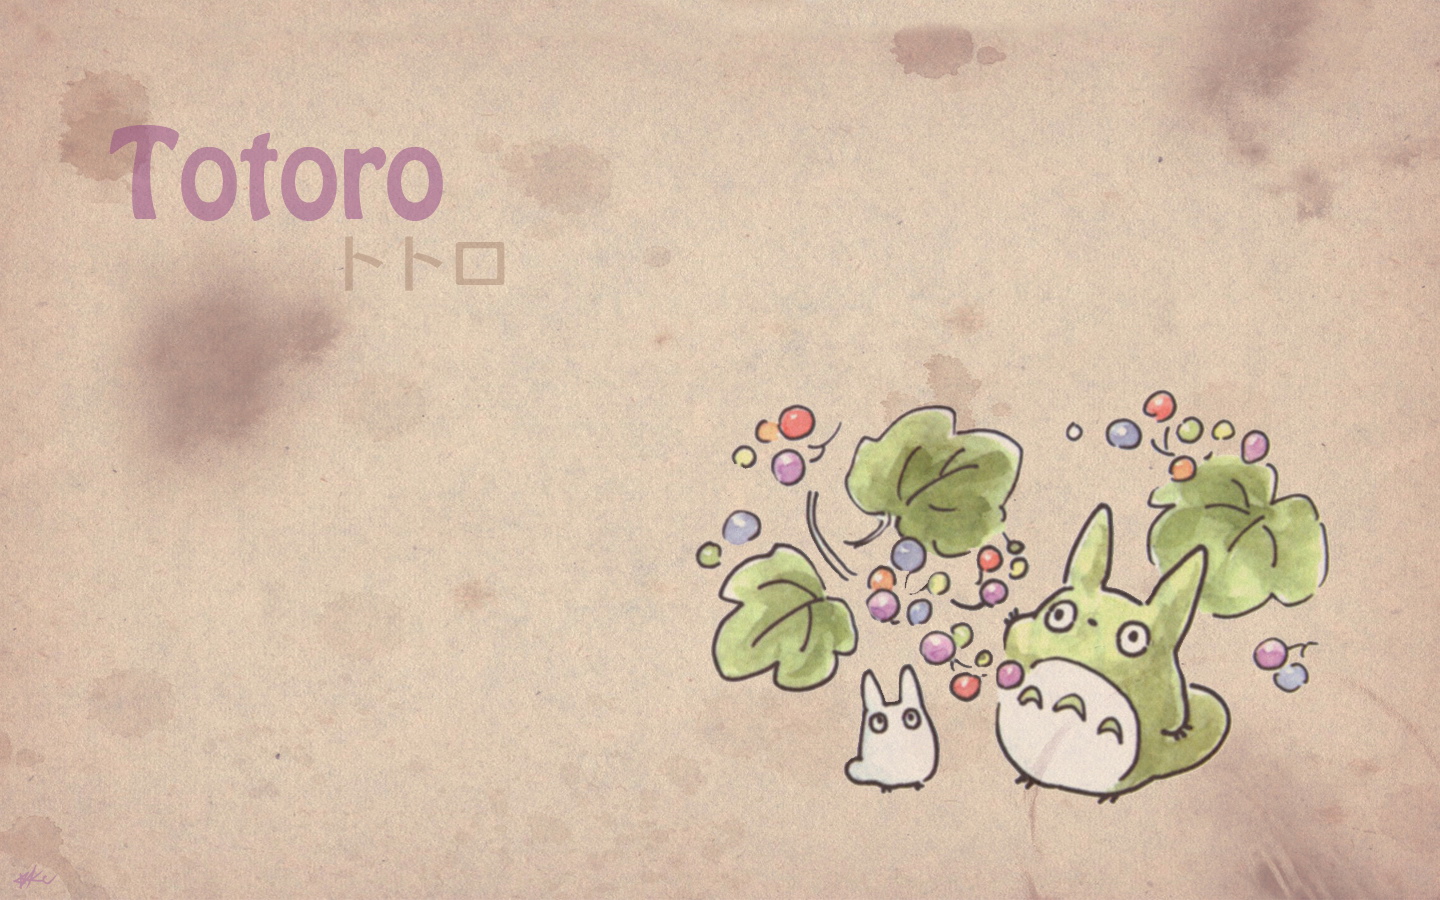 壁纸1440x900Totoro 龙猫 手绘简约版 壁纸5壁纸 Totoro（龙猫）壁纸 Totoro（龙猫）图片 Totoro（龙猫）素材 绘画壁纸 绘画图库 绘画图片素材桌面壁纸